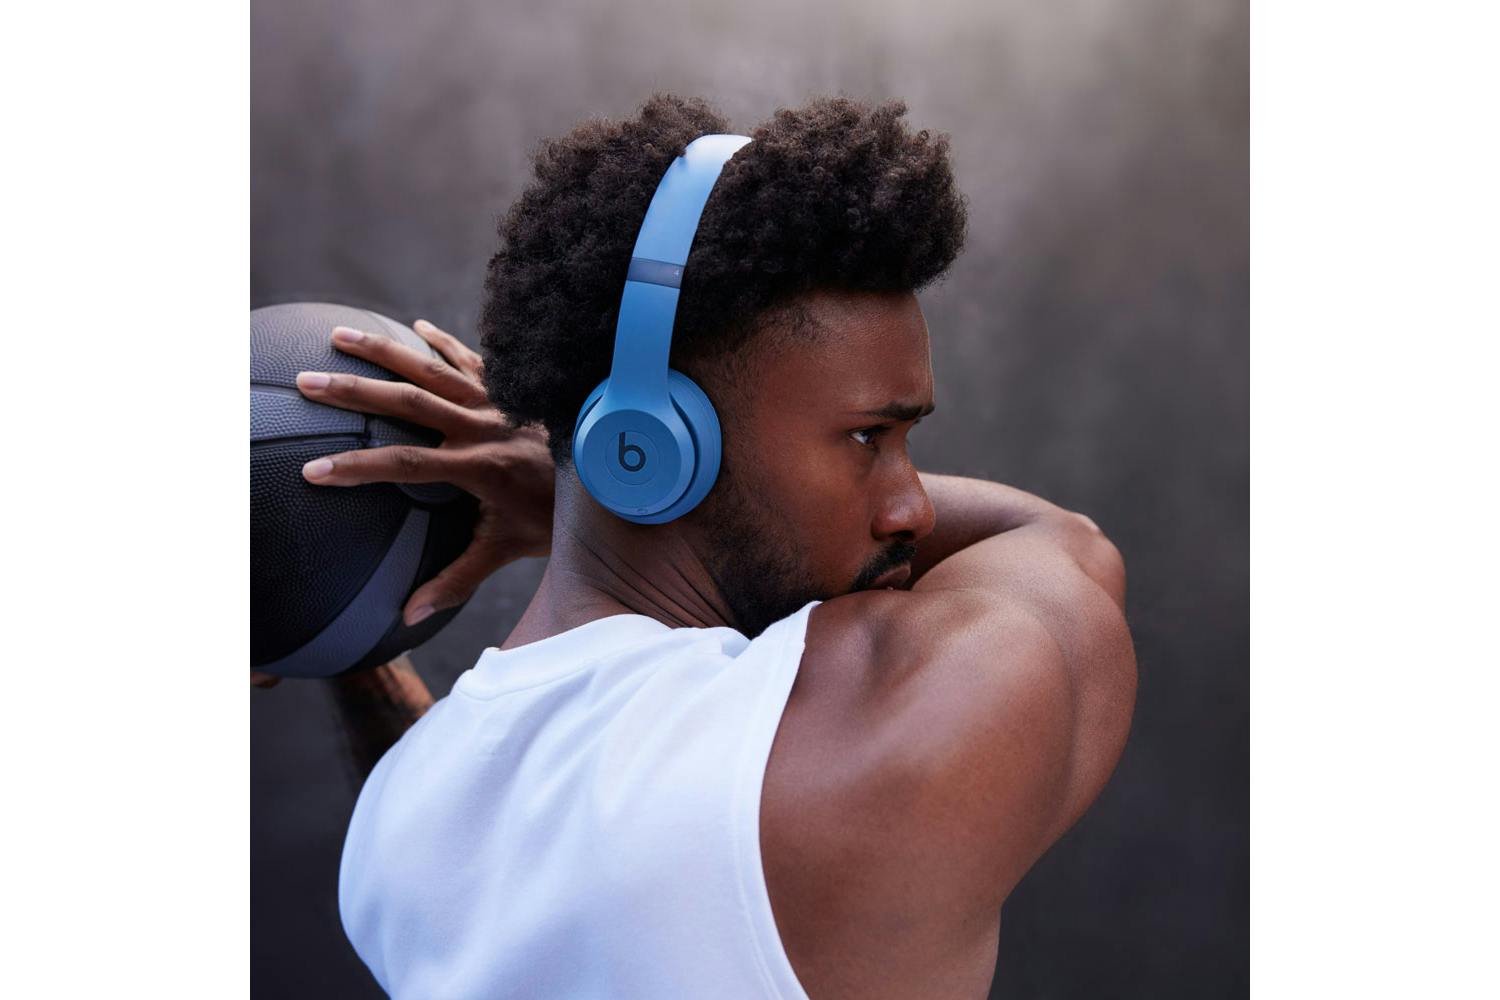 Beats Solo 4 On-Ear Wireless Headphones | Slate Blue